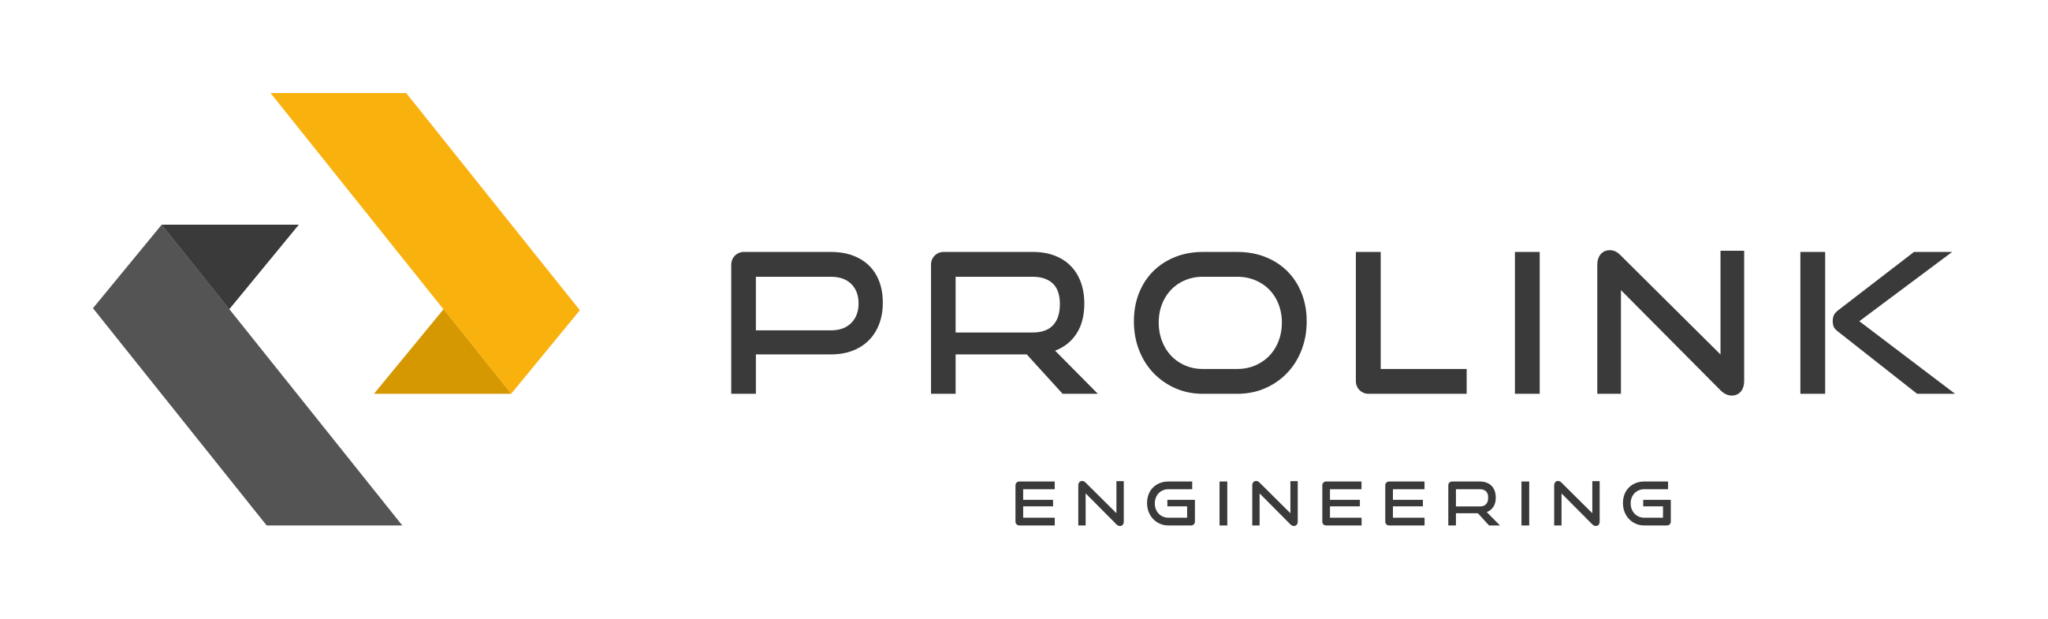 Prolink Engineering - Industriële Automatisering